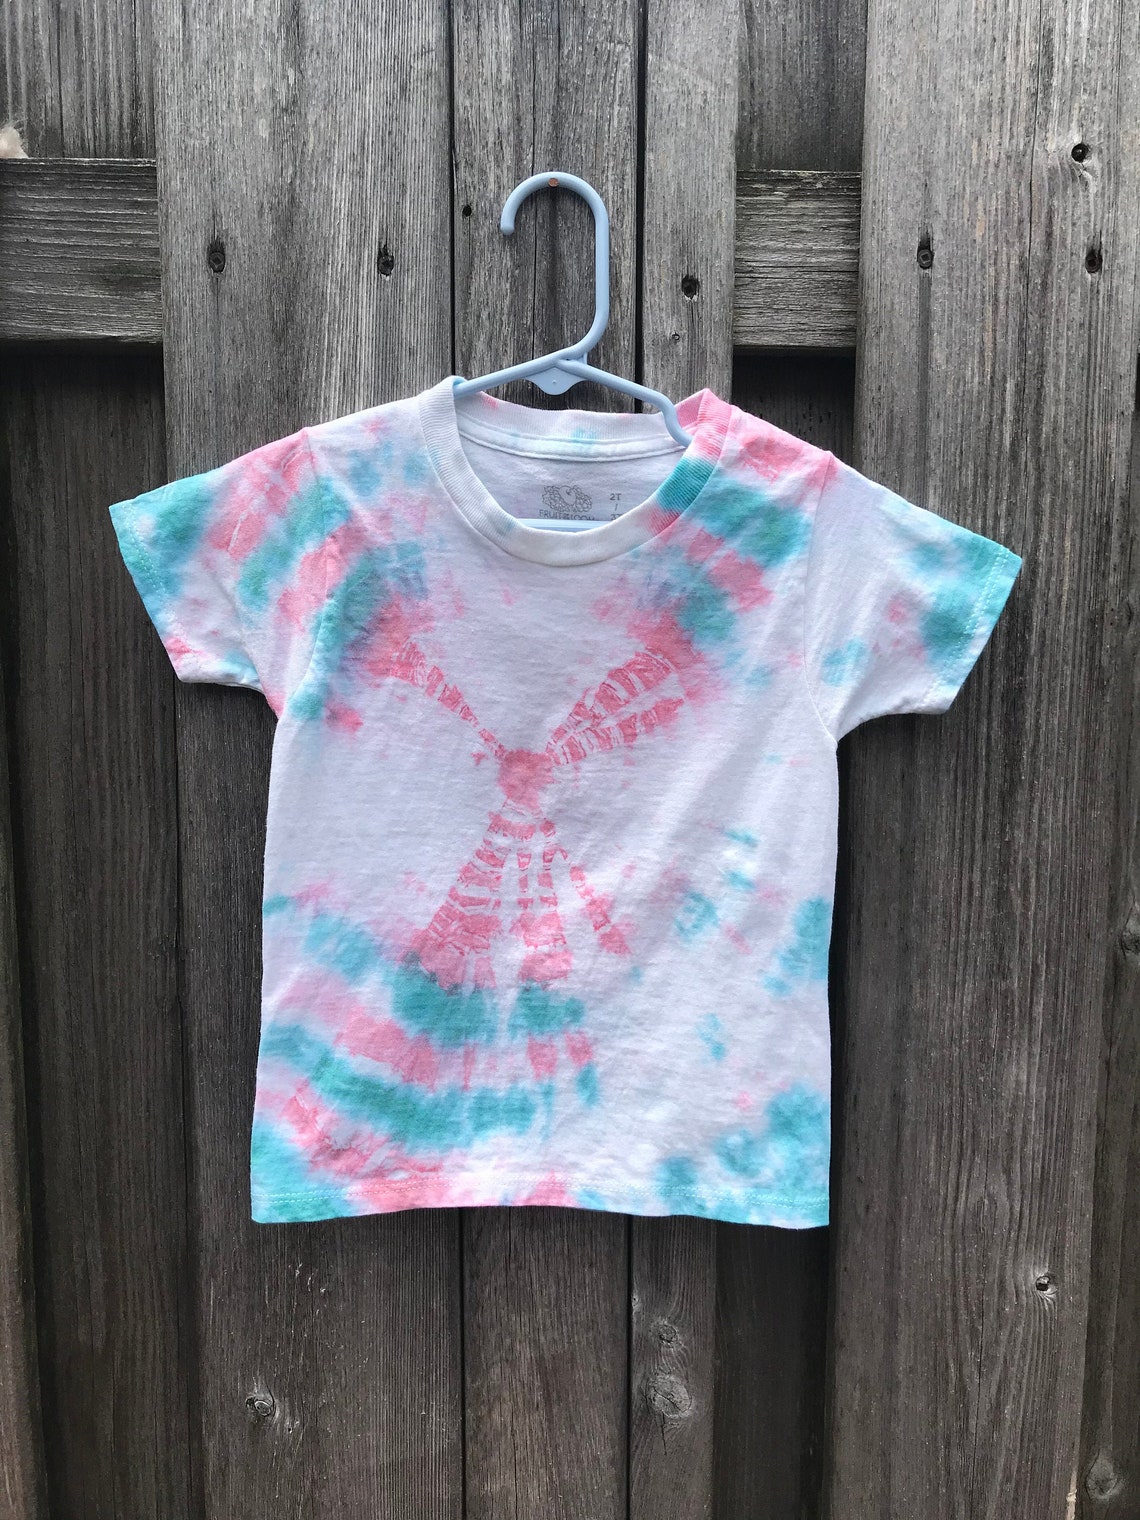 Toddler Tie Dye T-Shirt | Etsy